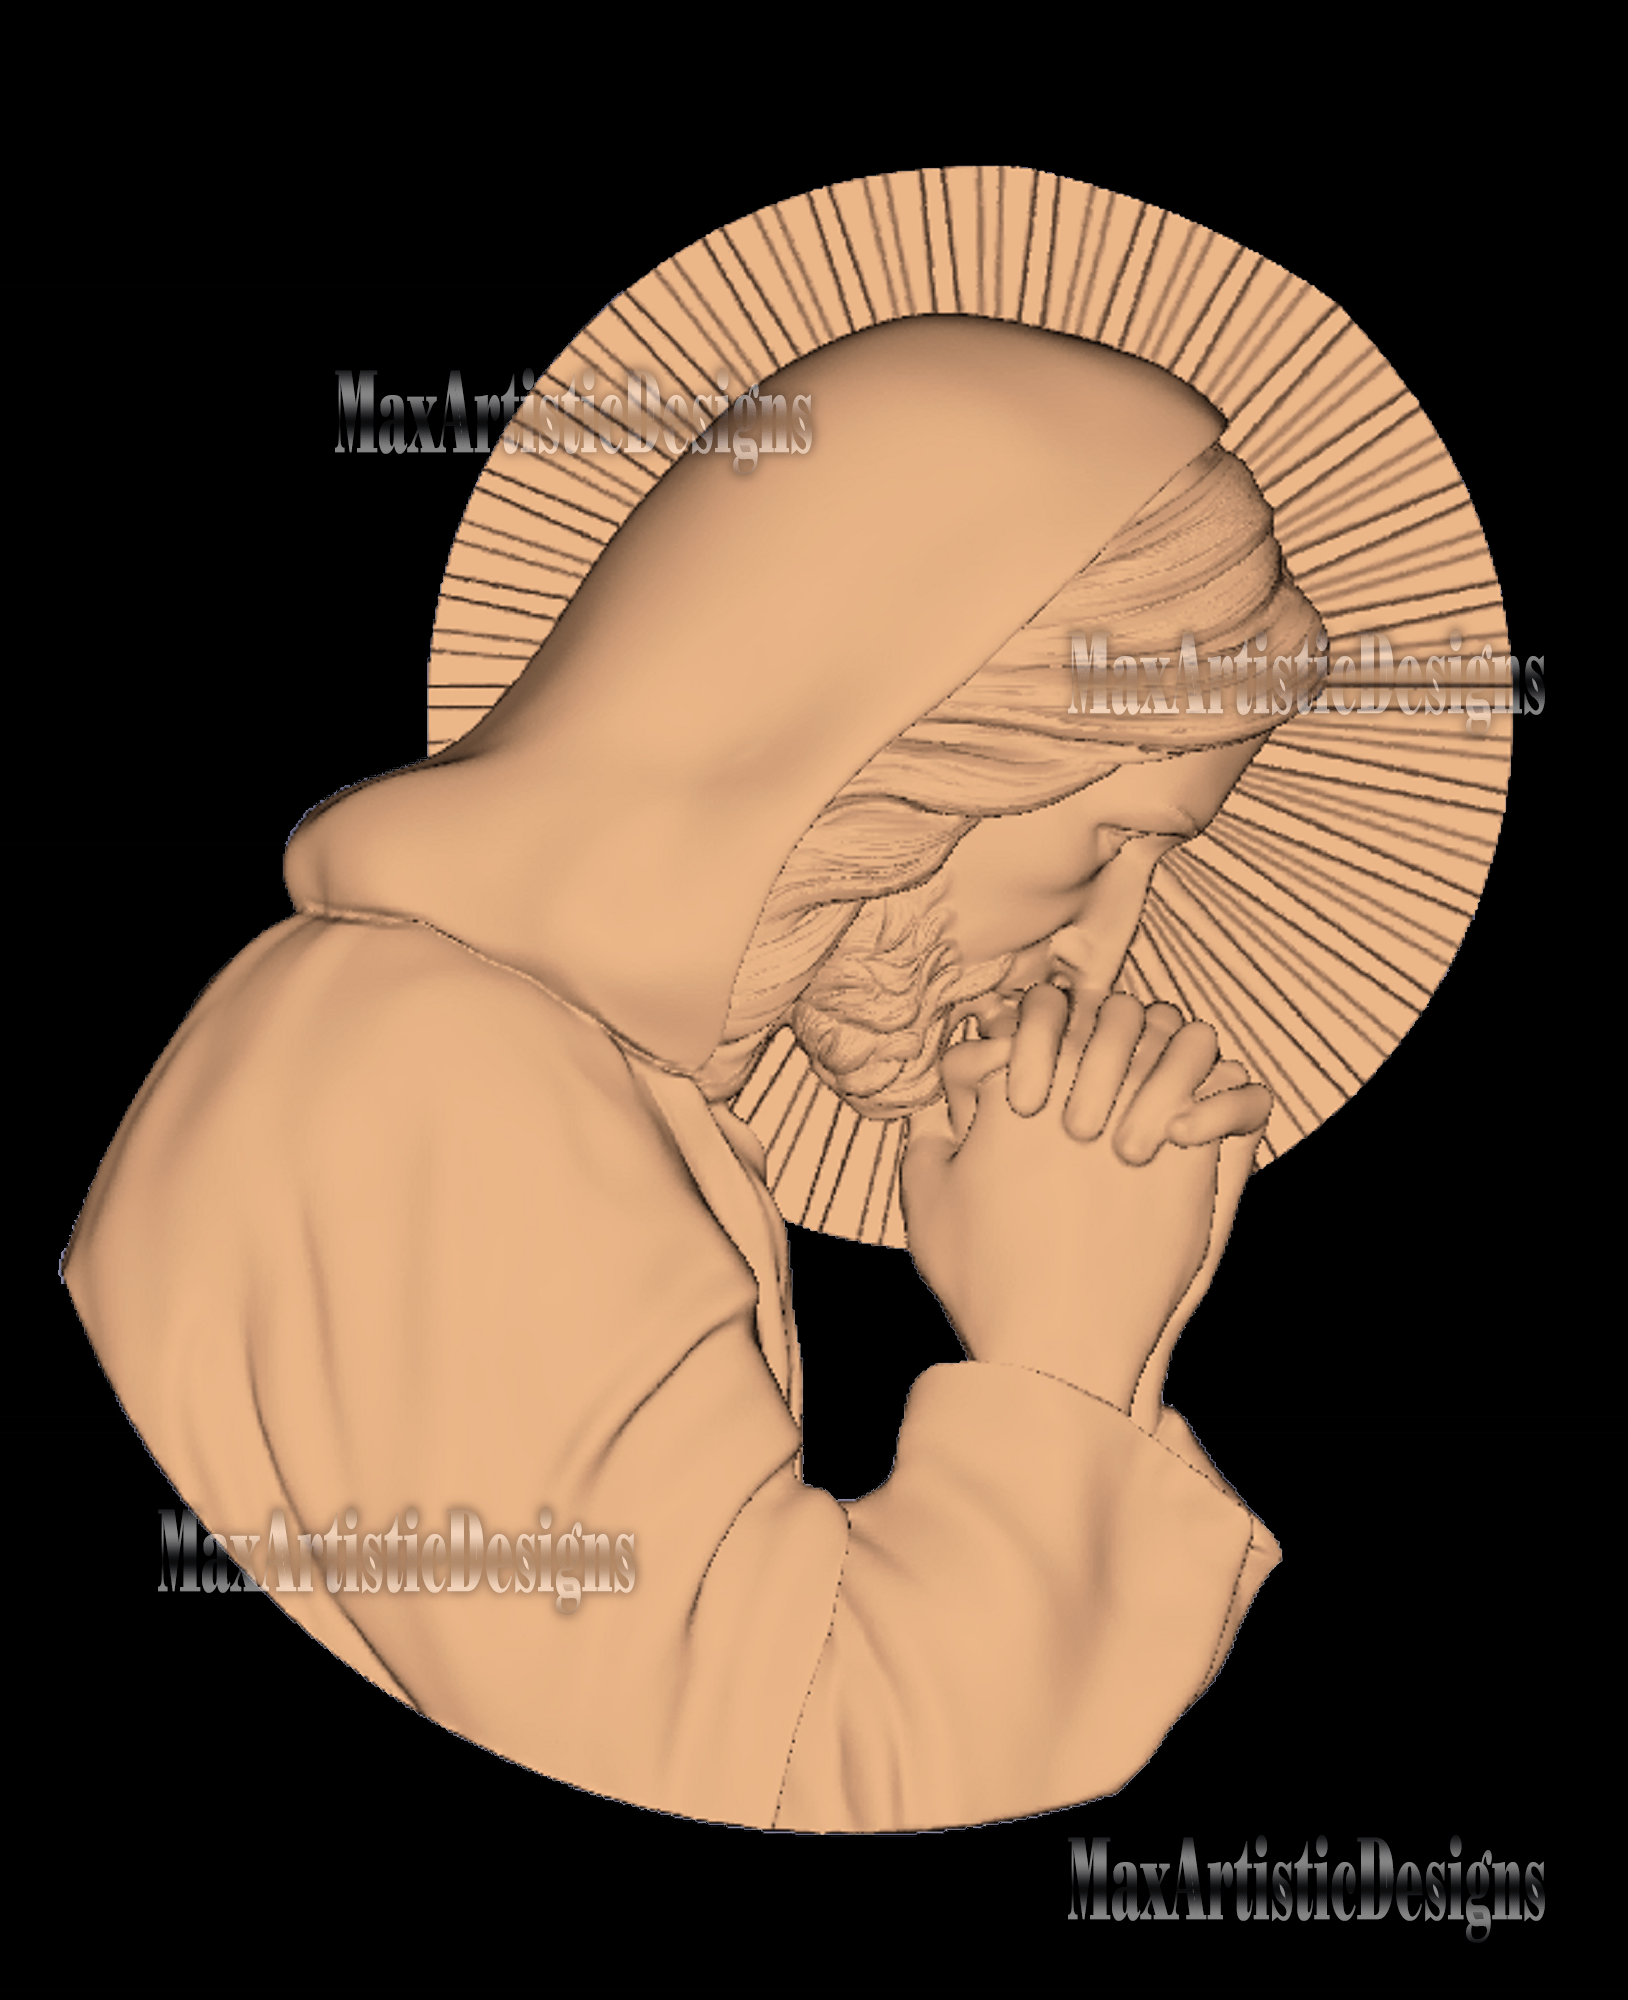 vectores religiosos de jesucristo, 4 partes, en formato stl 3d para impresora de enrutador cnc artcam aspire descarga digital